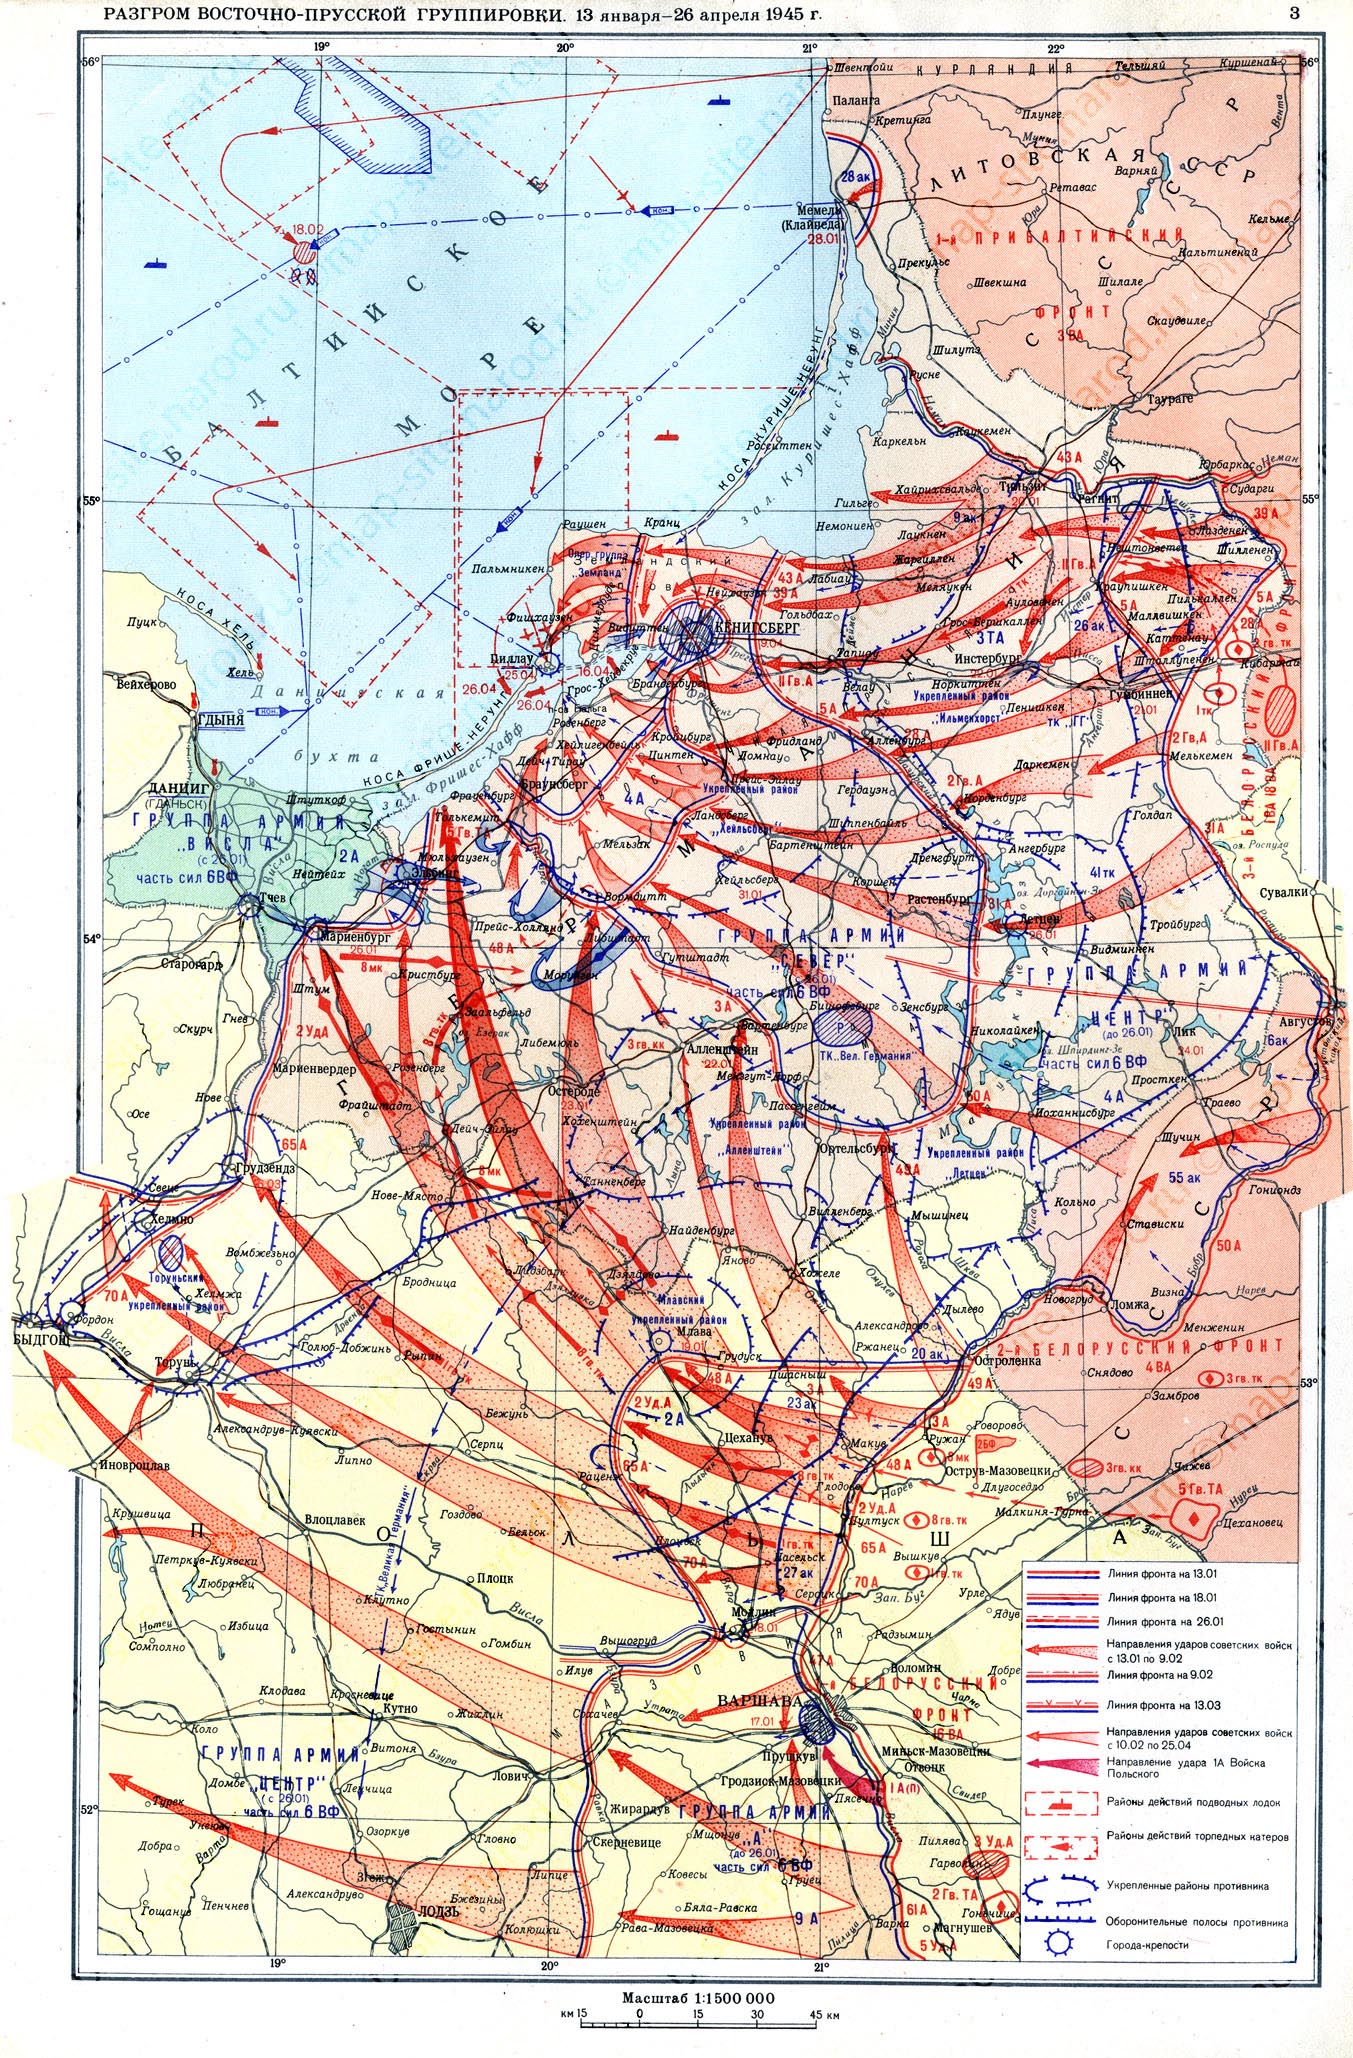 Bataille pour la Prusse orientale en 1945, partie 2